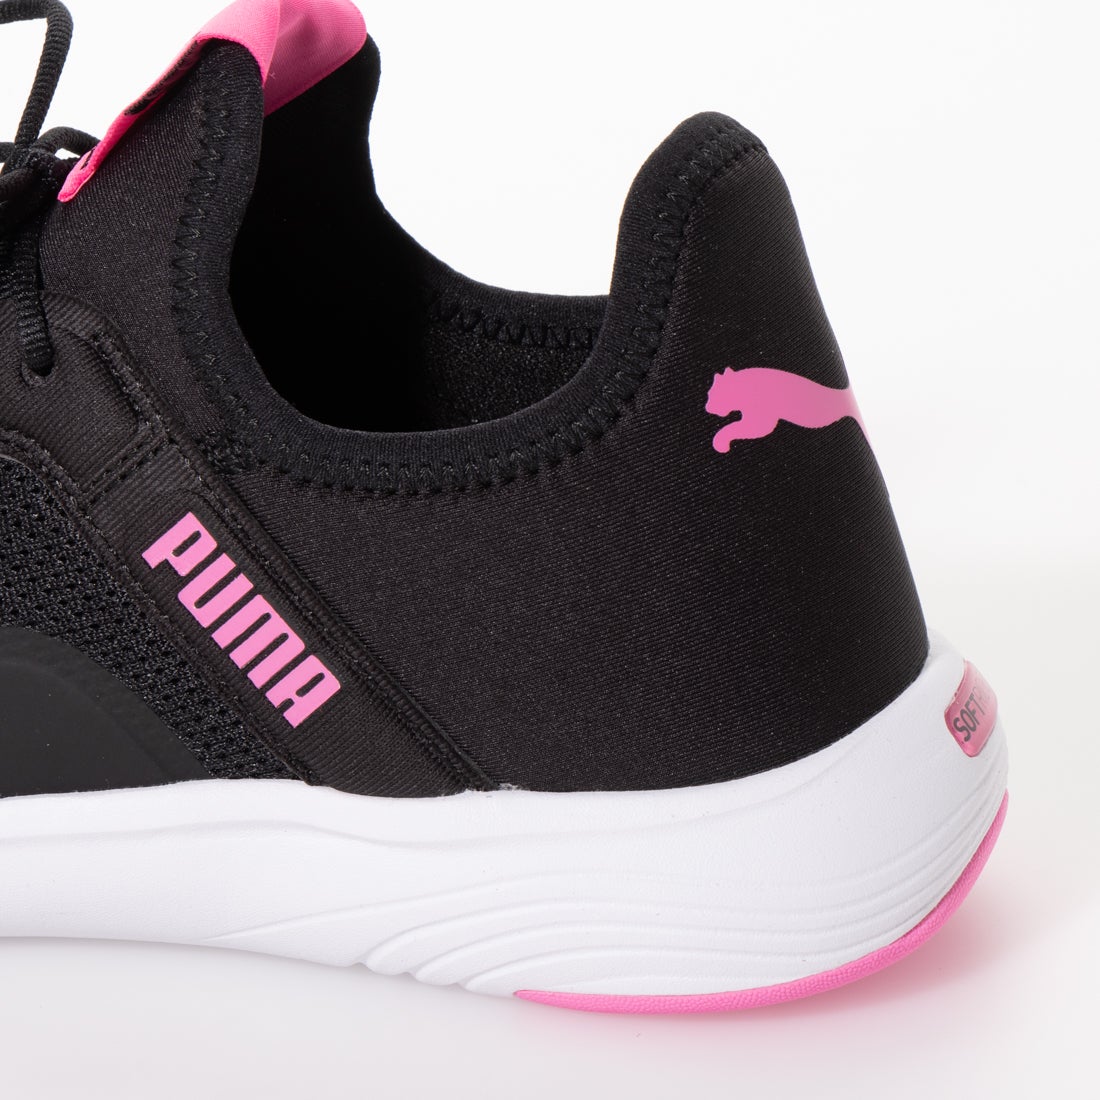 Puma プーマ ソフトライド Softride ﾊﾞｲﾀﾙ Femme ウィメンズ 靴 ファッション通販 ロコンド 自宅で試着 気軽に返品